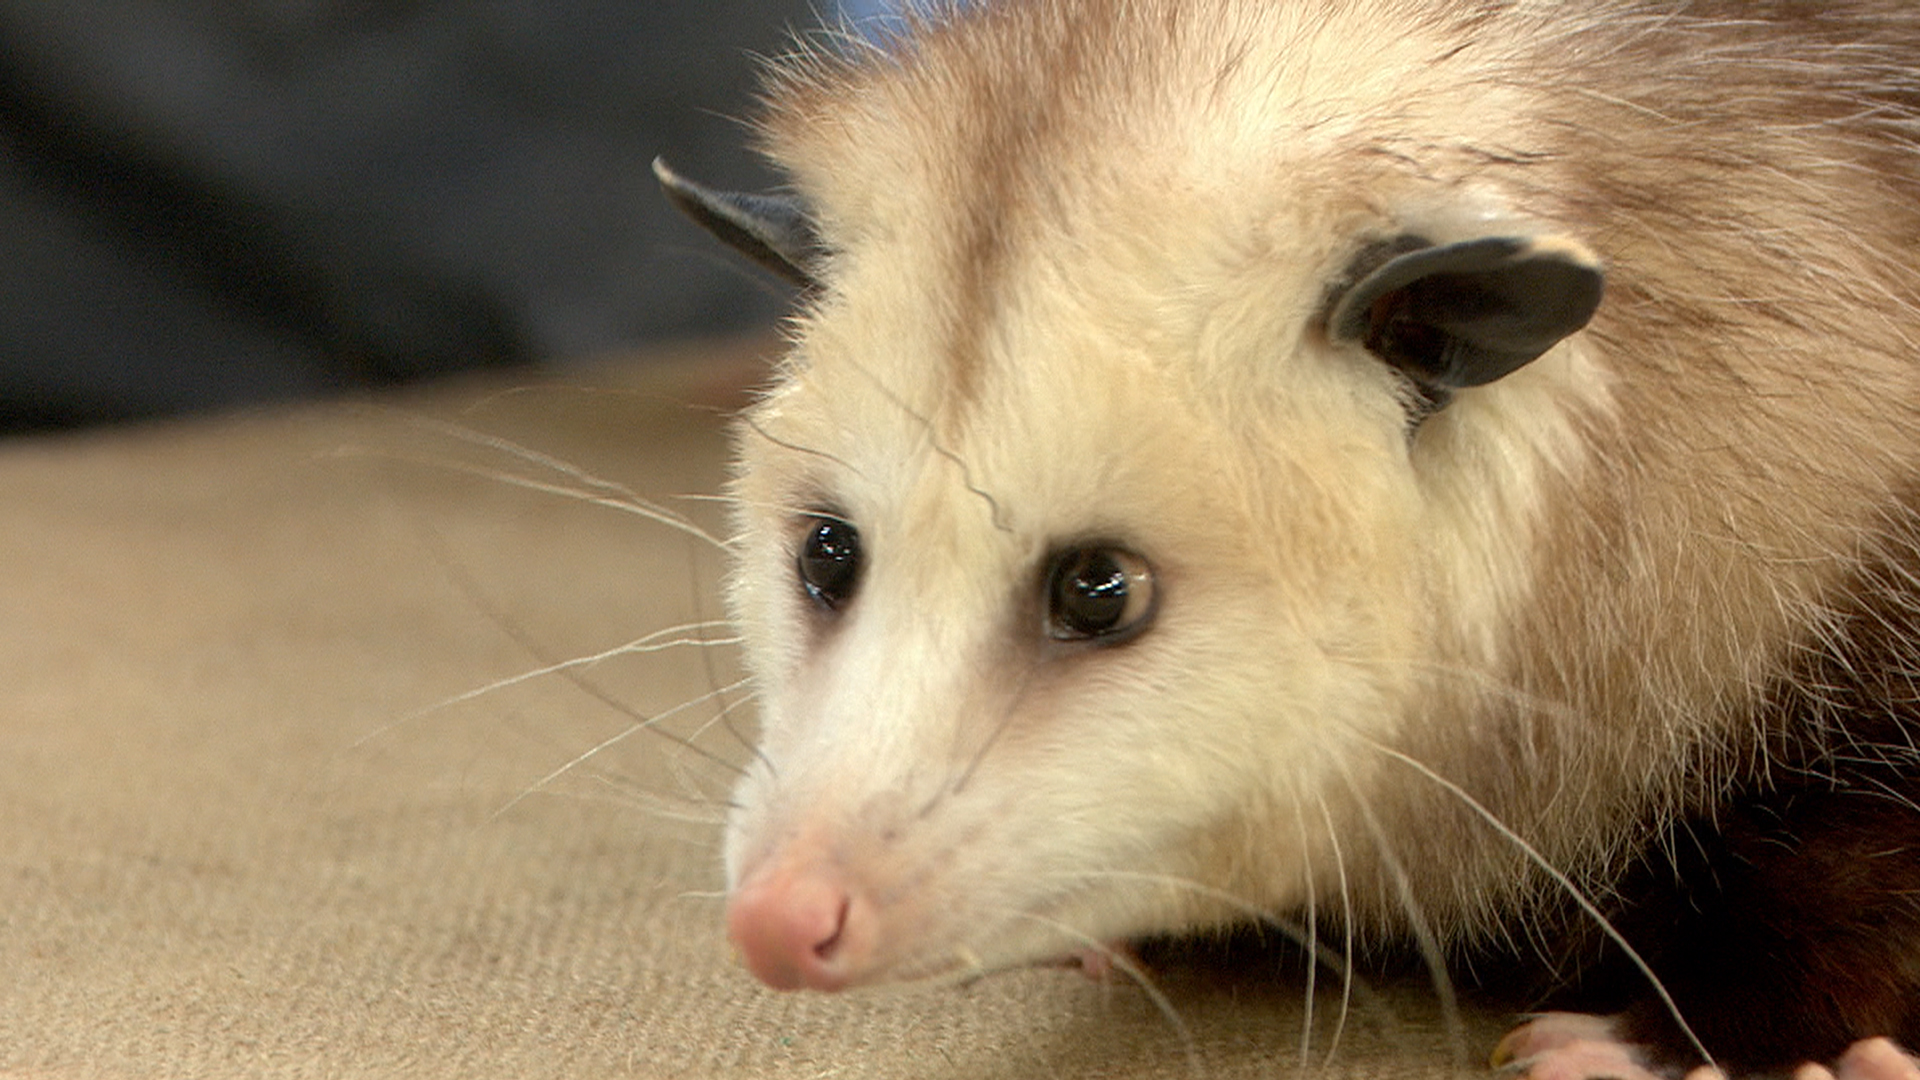 Meet backyard animals: An opossum, a Gila monster, and a kestrel